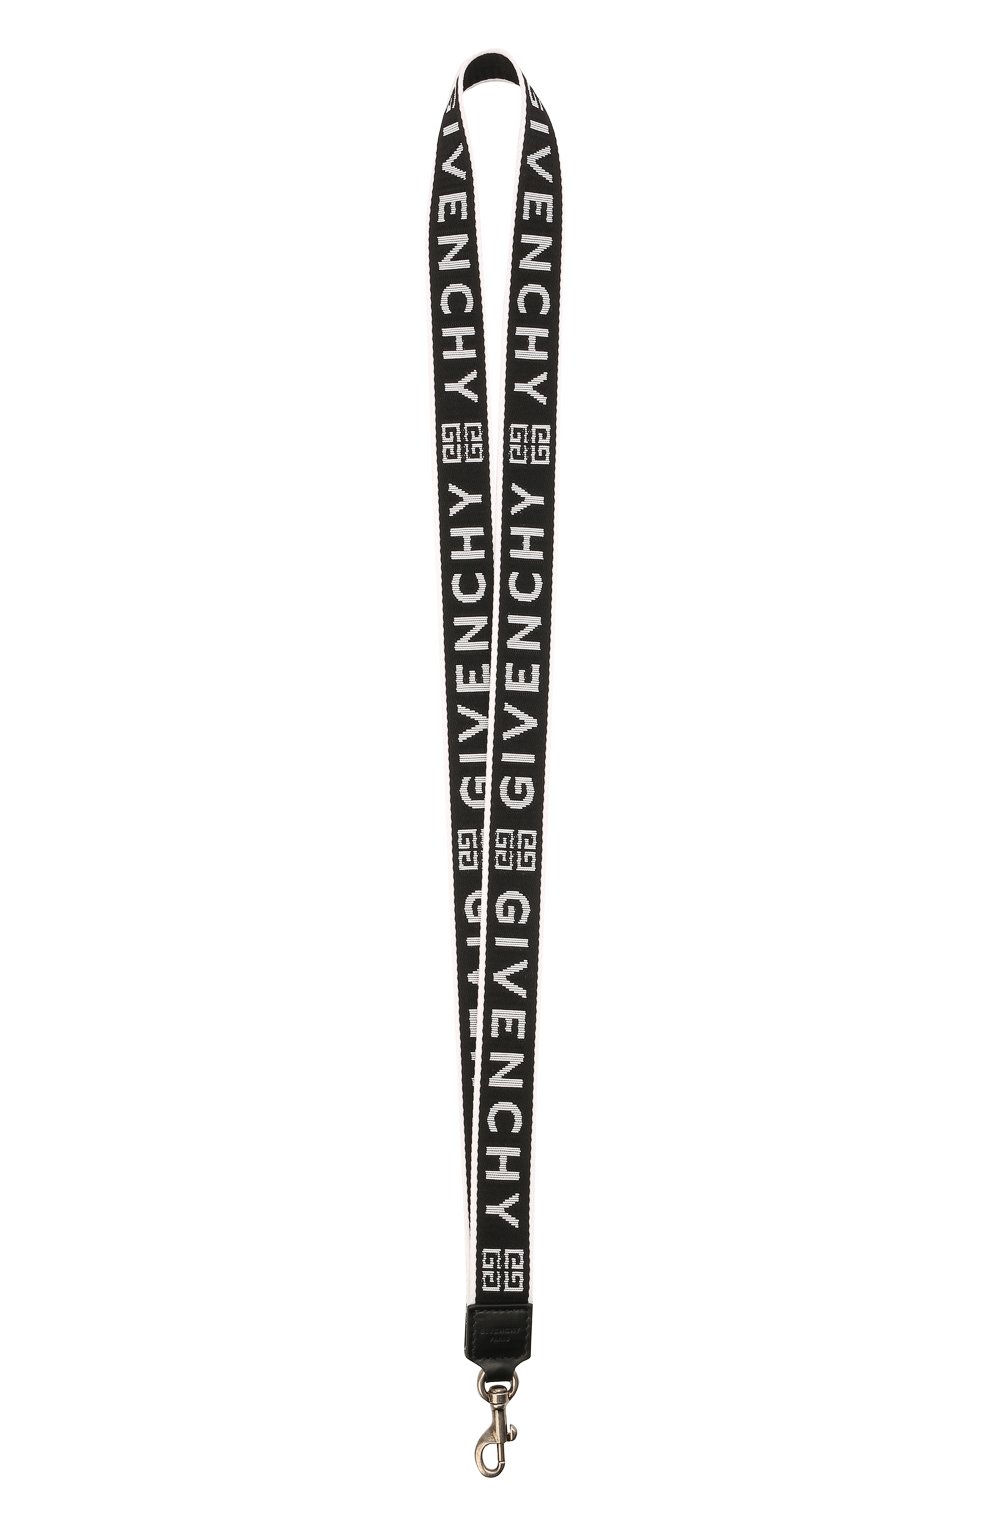 Брелоки Givenchy, Текстильный брелок Givenchy, Италия, Чёрный, Текстиль: 100%;, 11770877  - купить